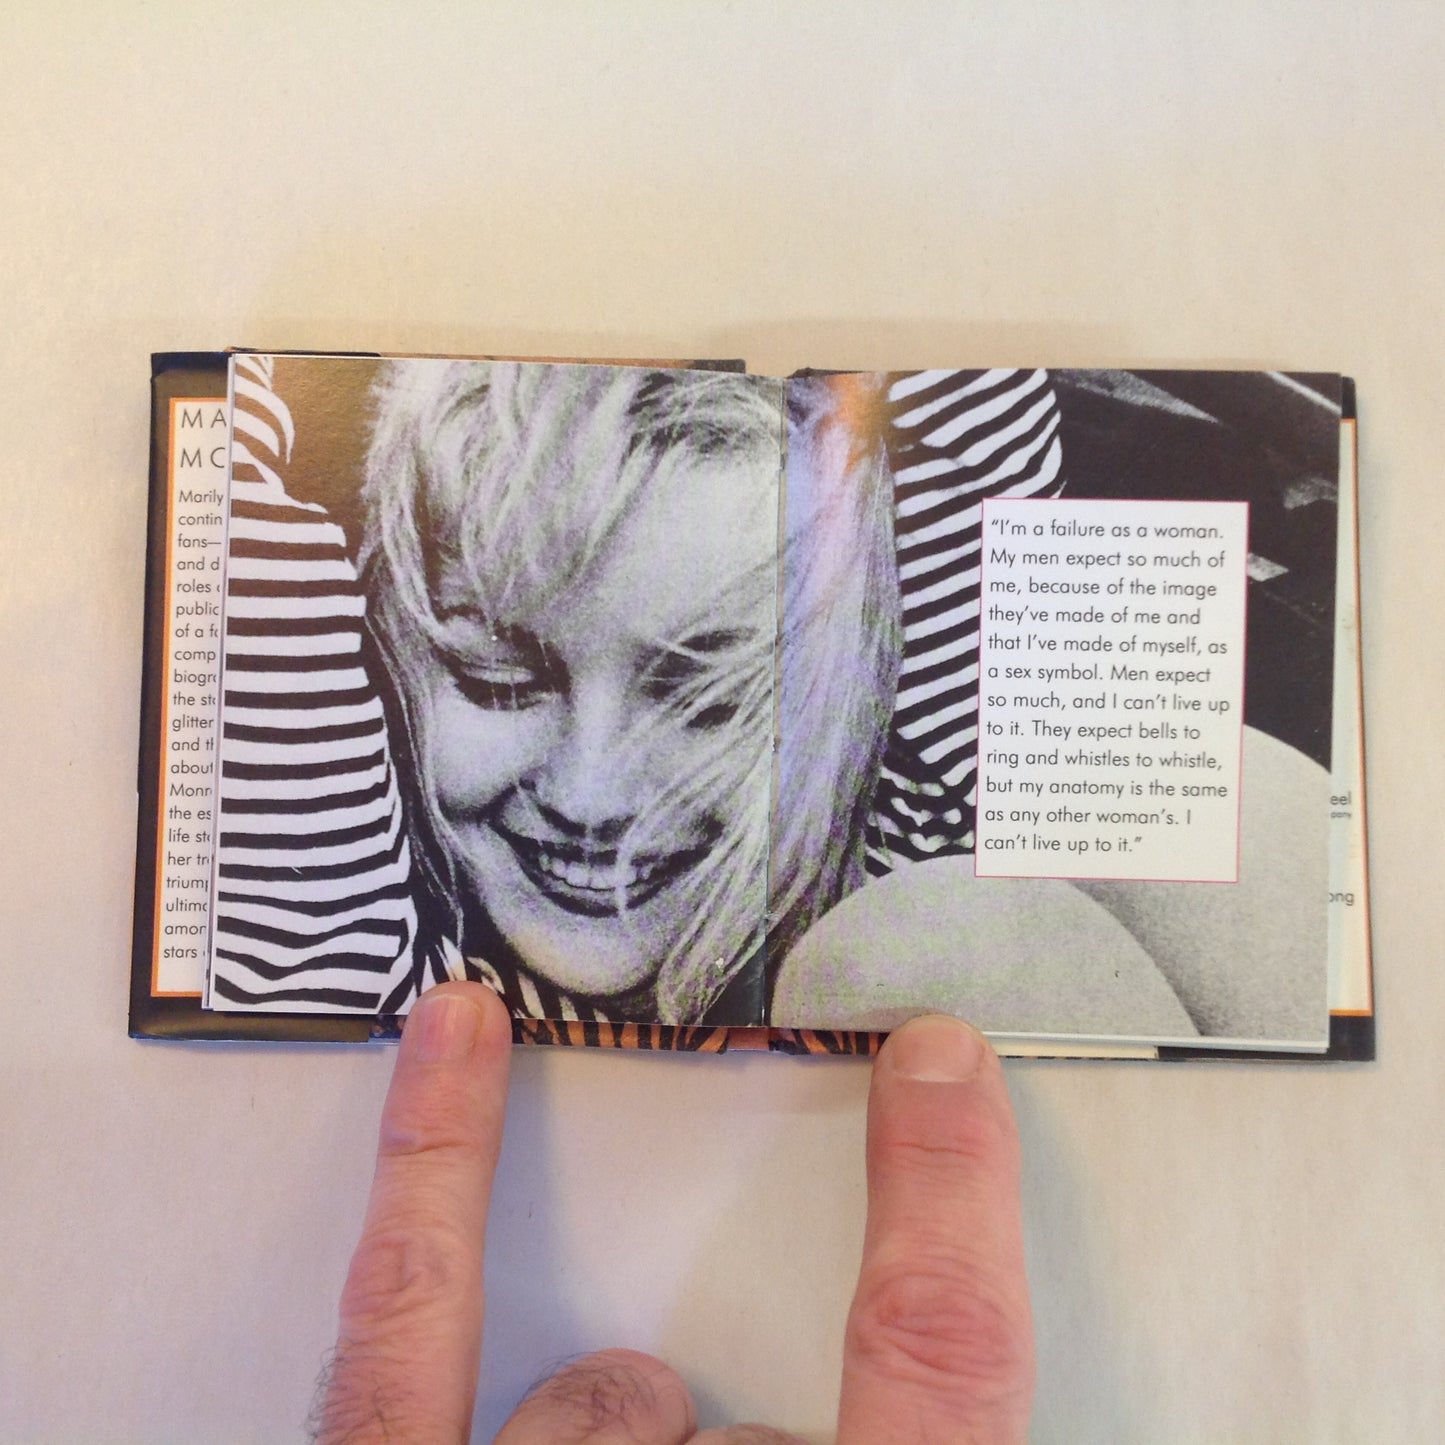 Vintage 1995 Hardcover Gift Book Marilyn Monroe Julie Mars